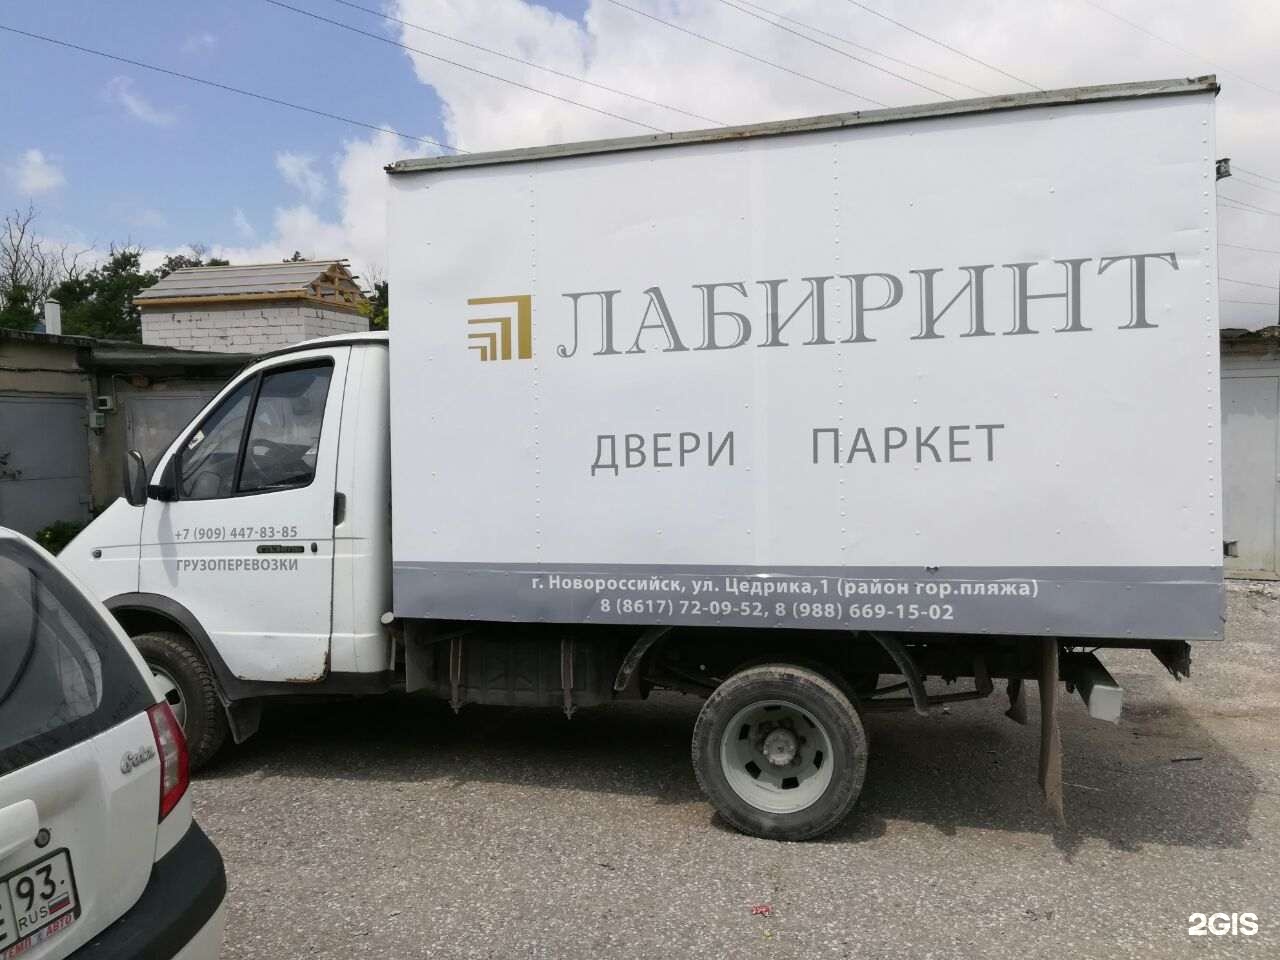 Брендинг грузового авто. Логотипы фирм на дверях газели в Новороссийске.